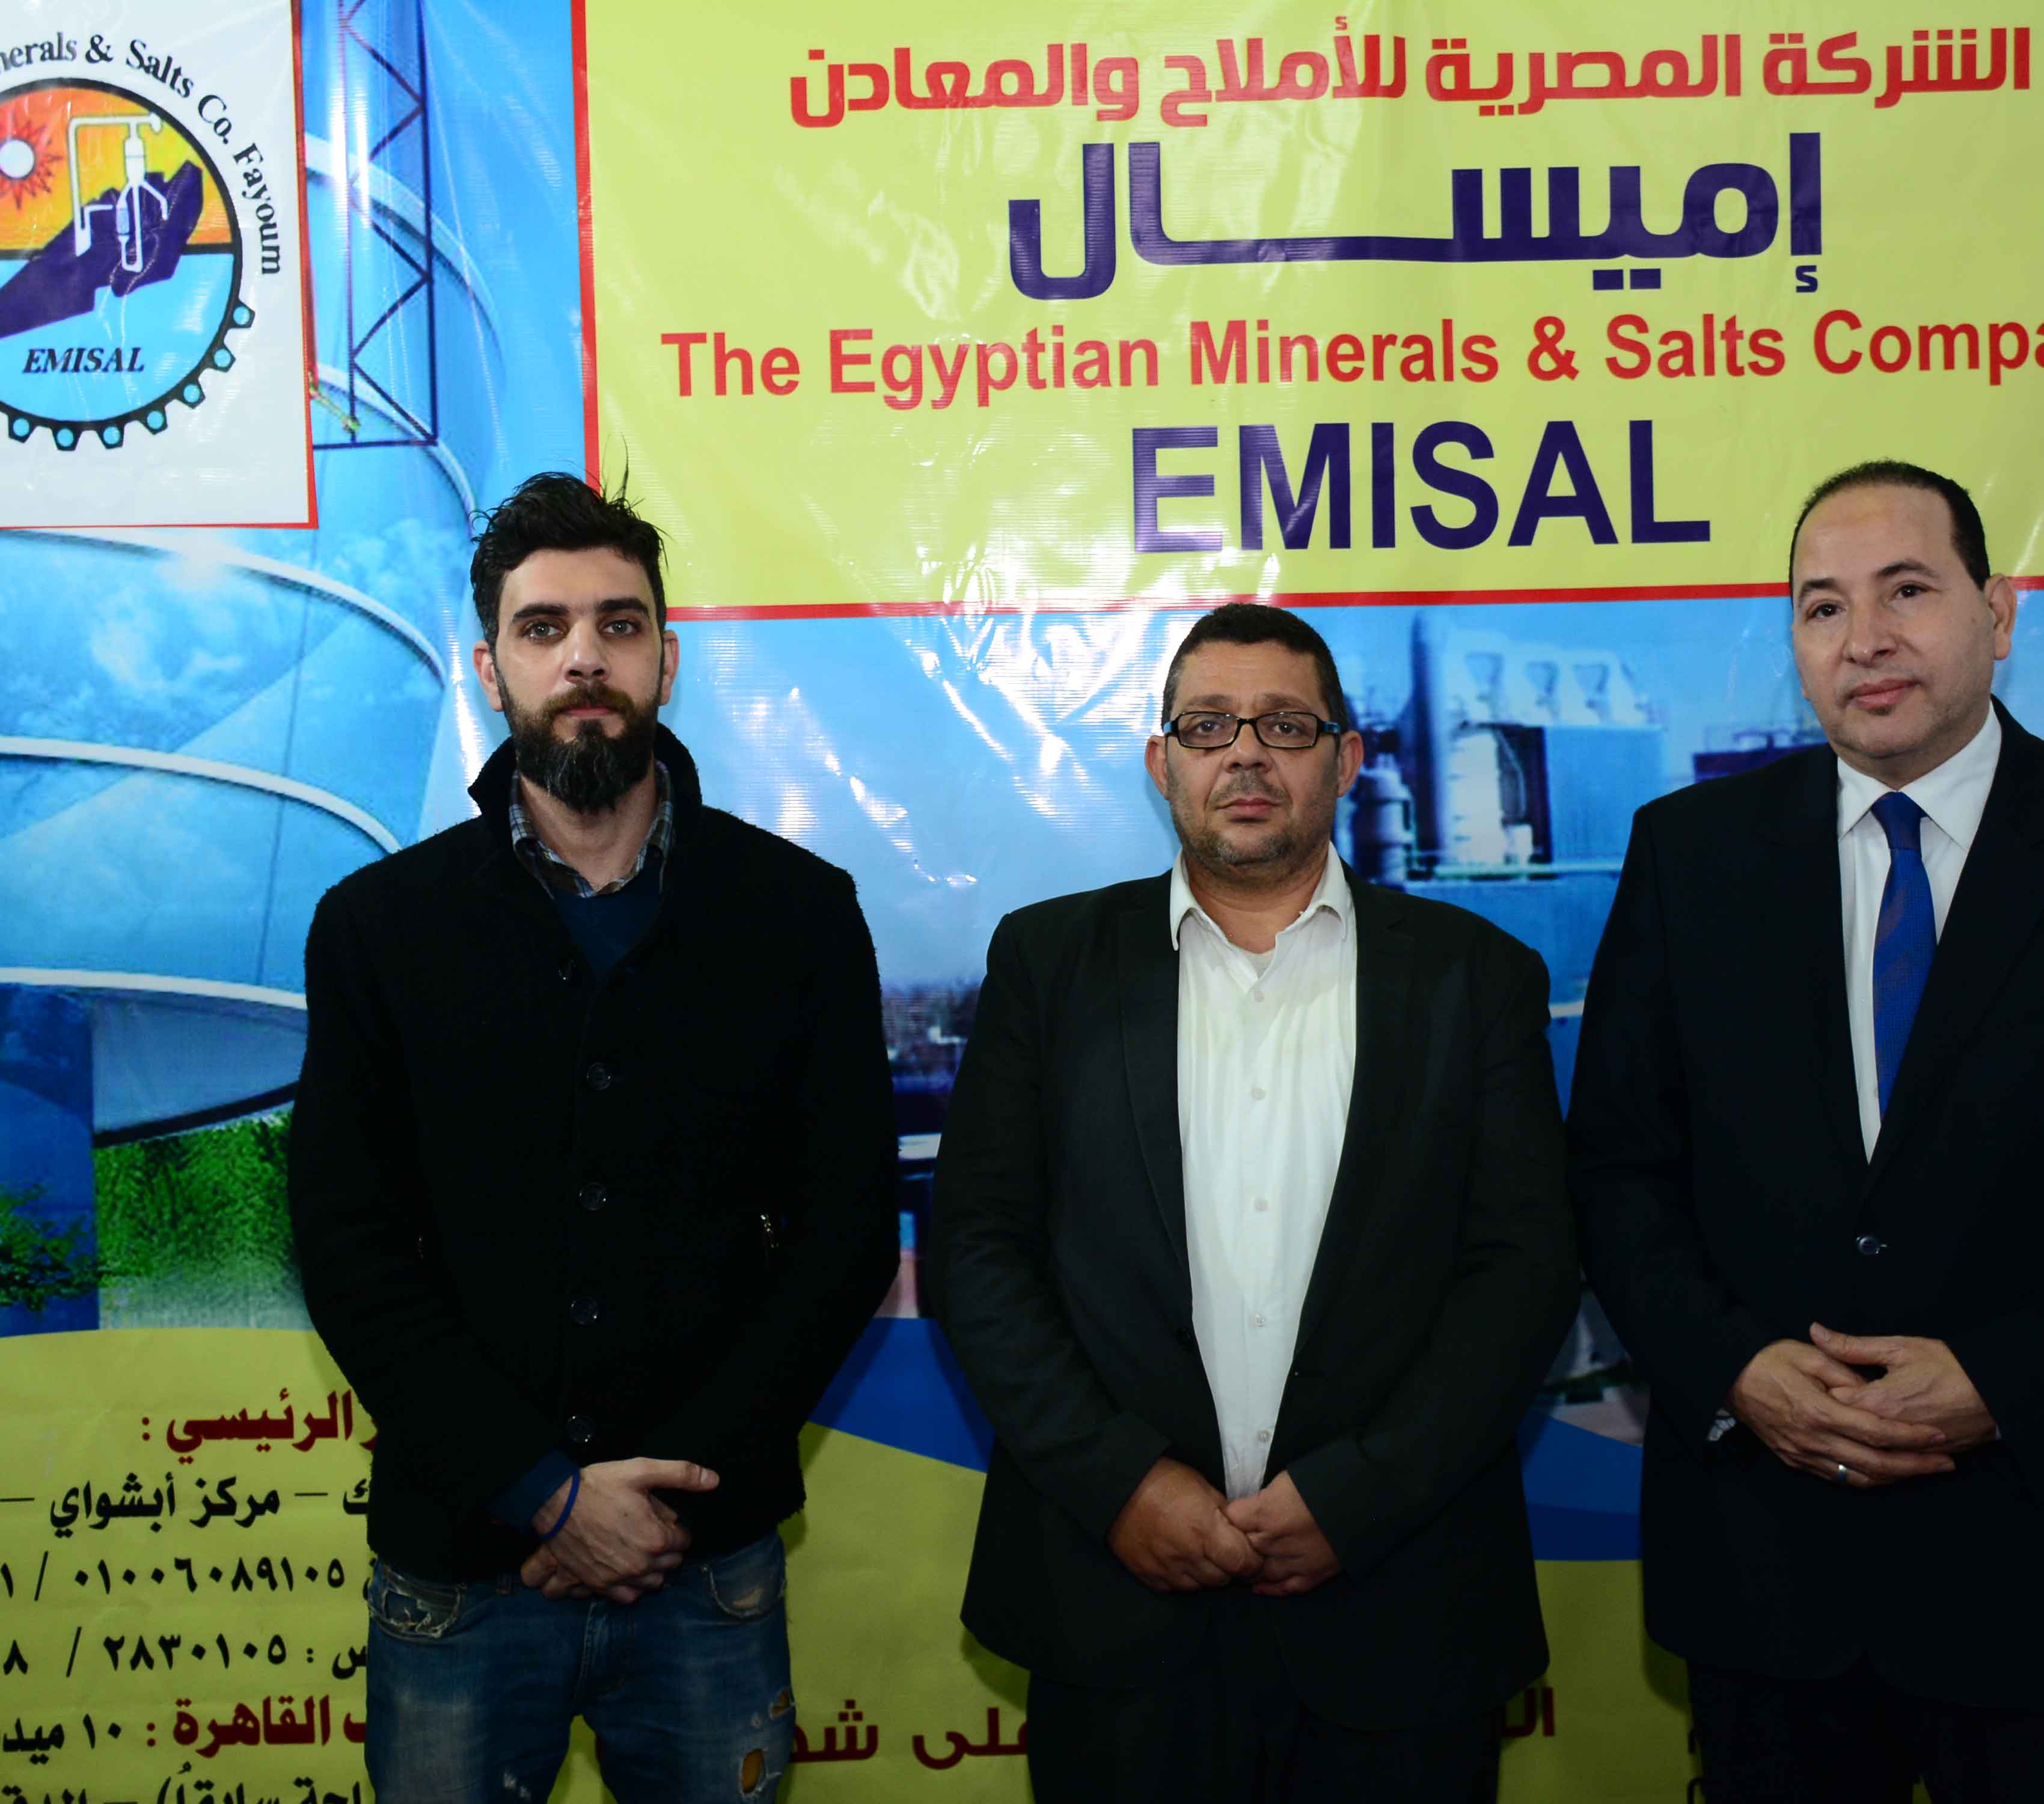 الشركة المصرية للأملاح والمعادن بالفيوم (ايميسال)
